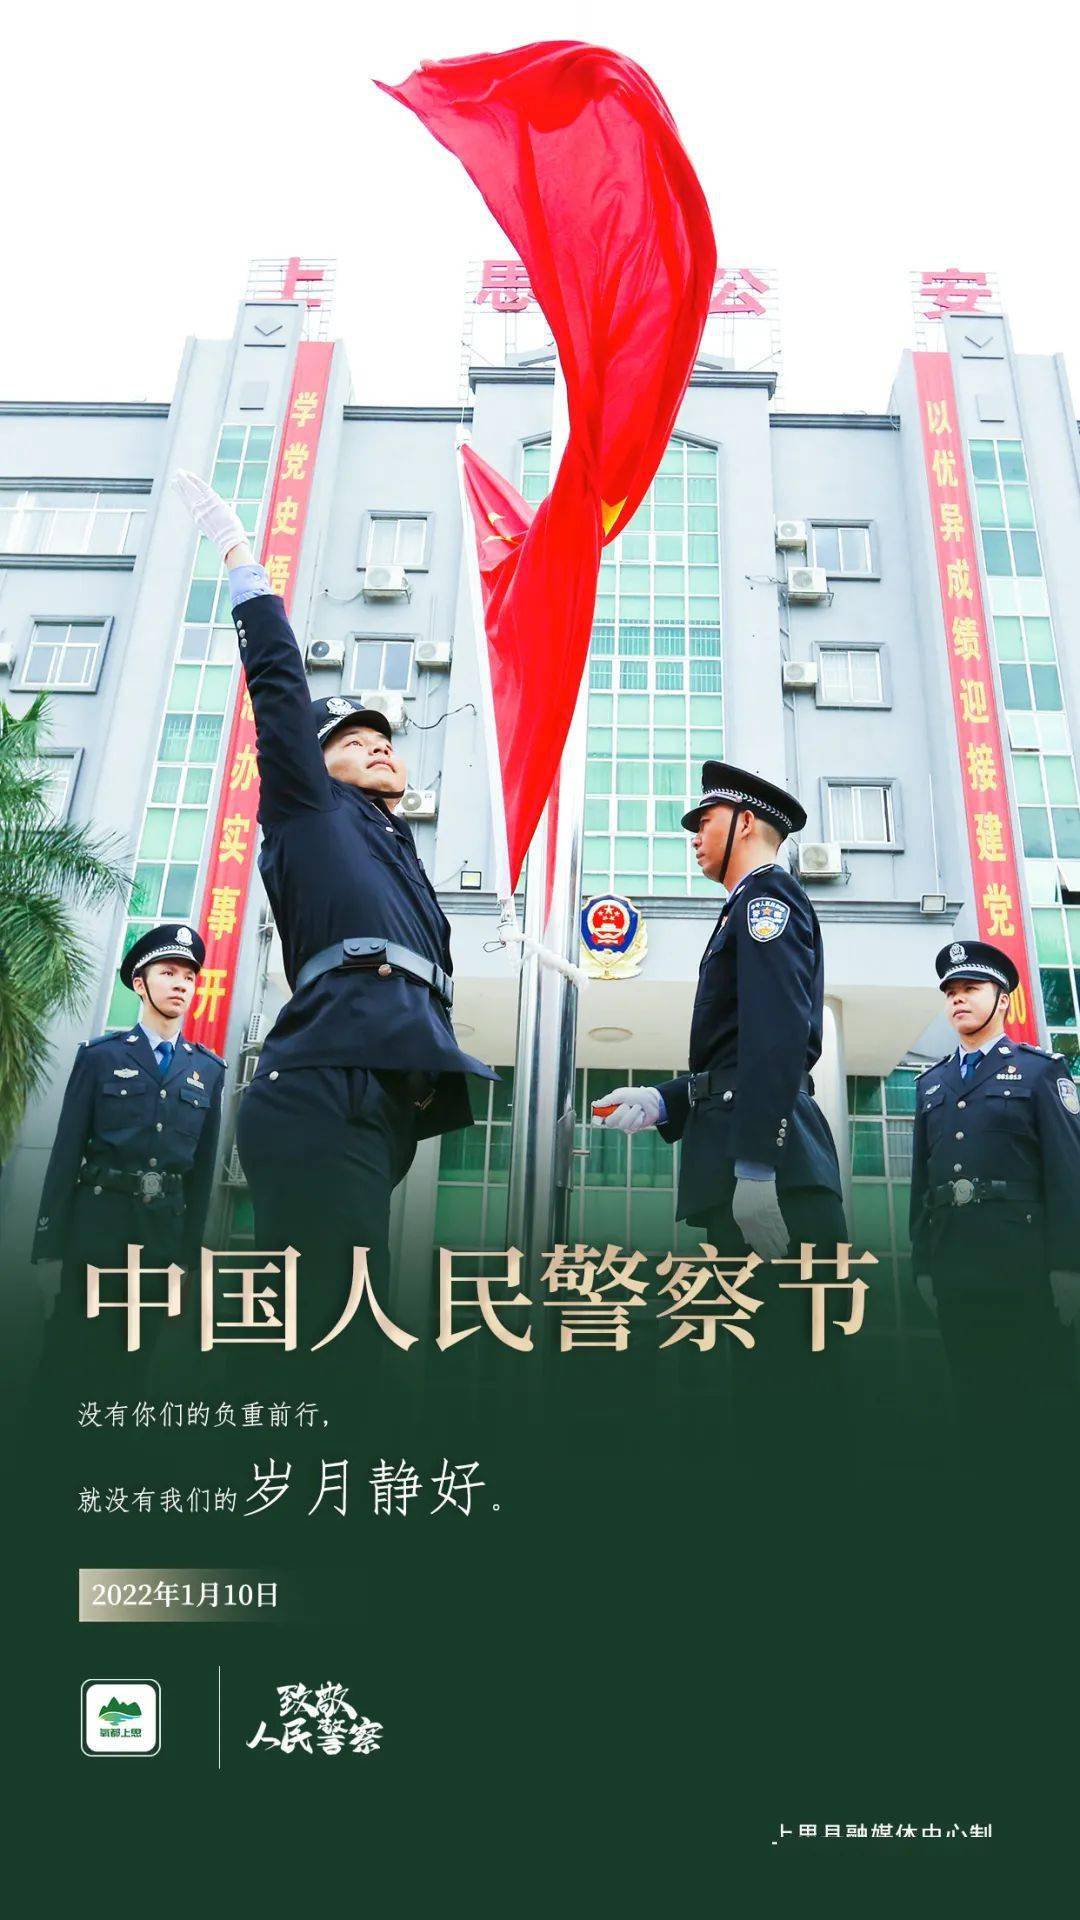 中国人民警察节照片图片